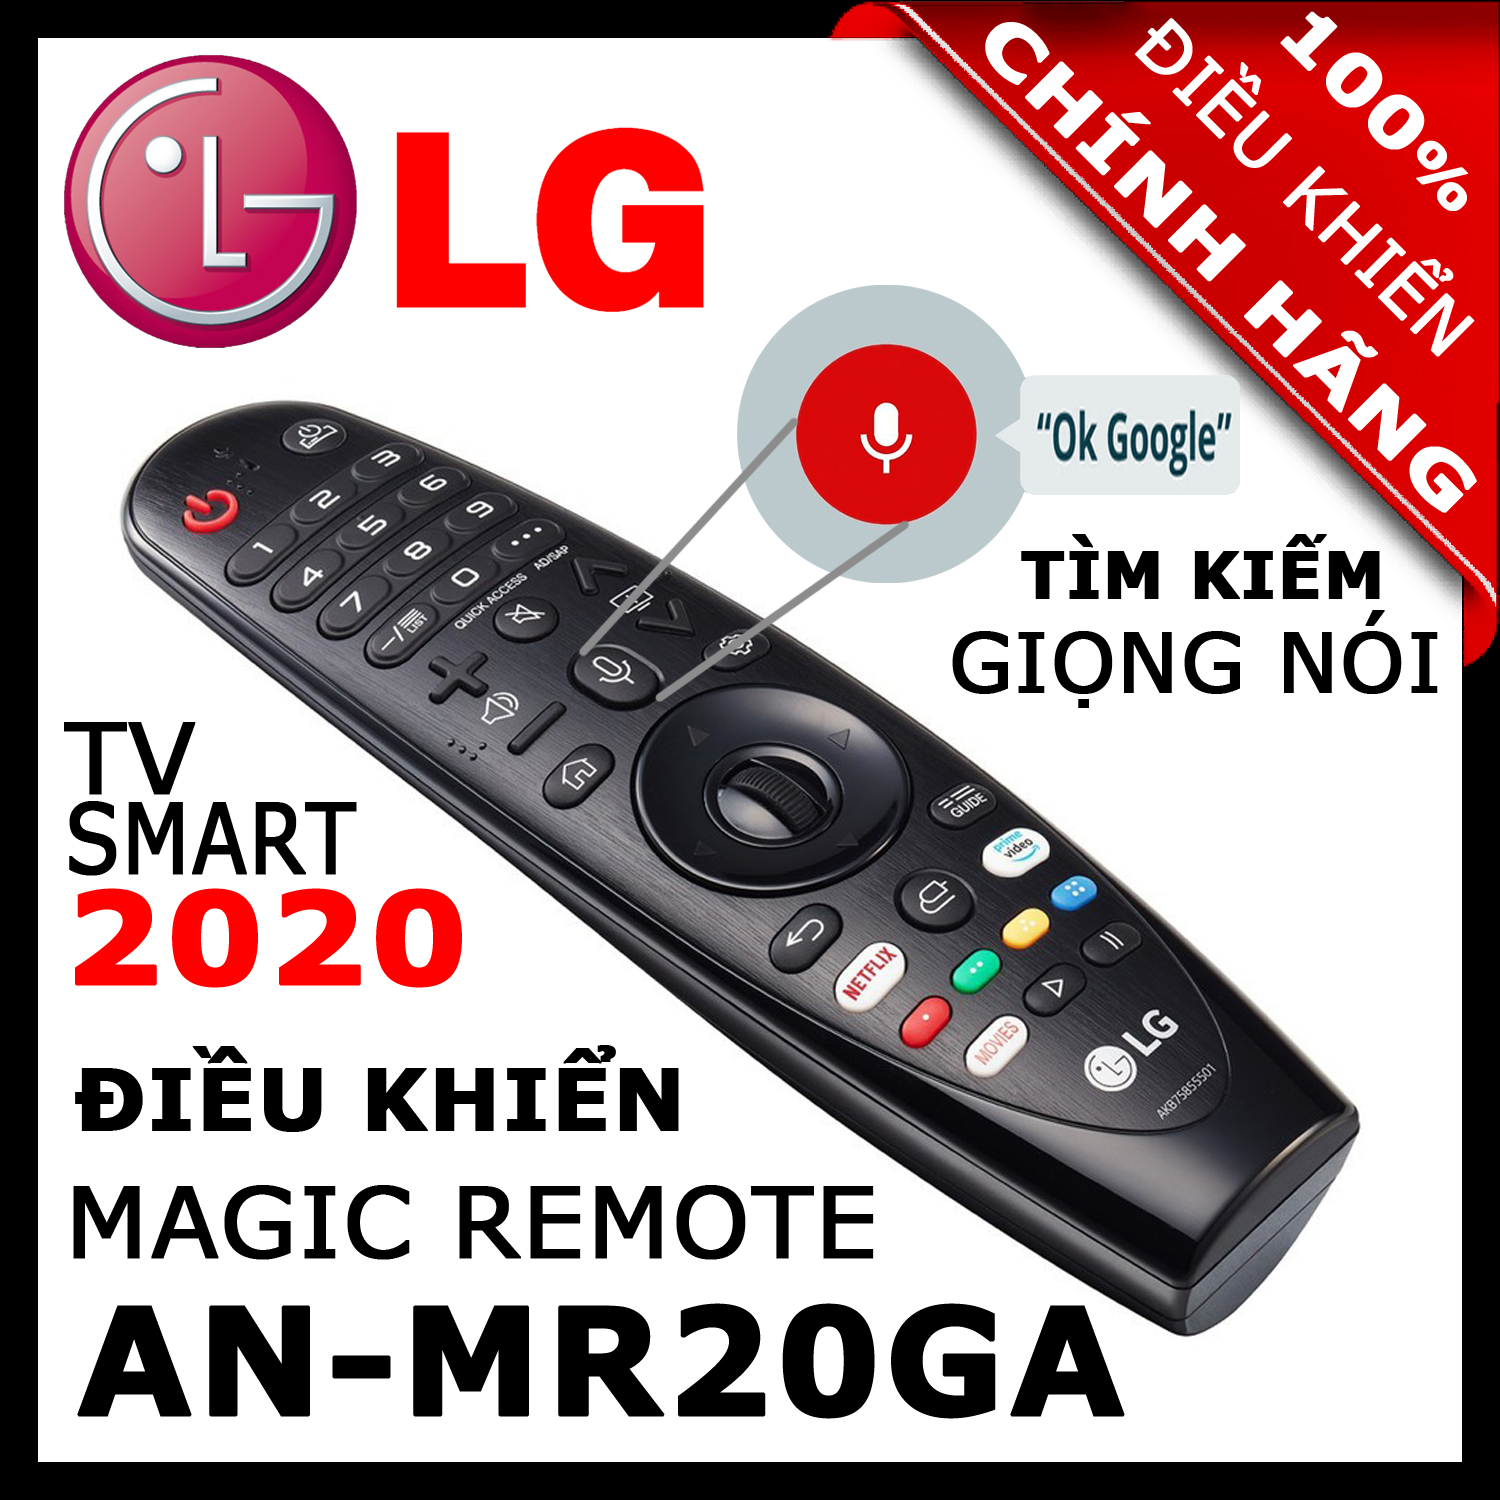 ĐIỀU KHIỂN Remote Tivi LG AN-MR20GA thay thế AN-MR19BA và AN-MR18BA và AN-MR650A có Giọng nói Chuột bay cho tivi LG 2020, 2019, 2018, 2017 Magic Remote AN-MR20GA mã số AKB75855501 HÀNG XỊN. Remote cho tivi LG sản xuất năm 2020